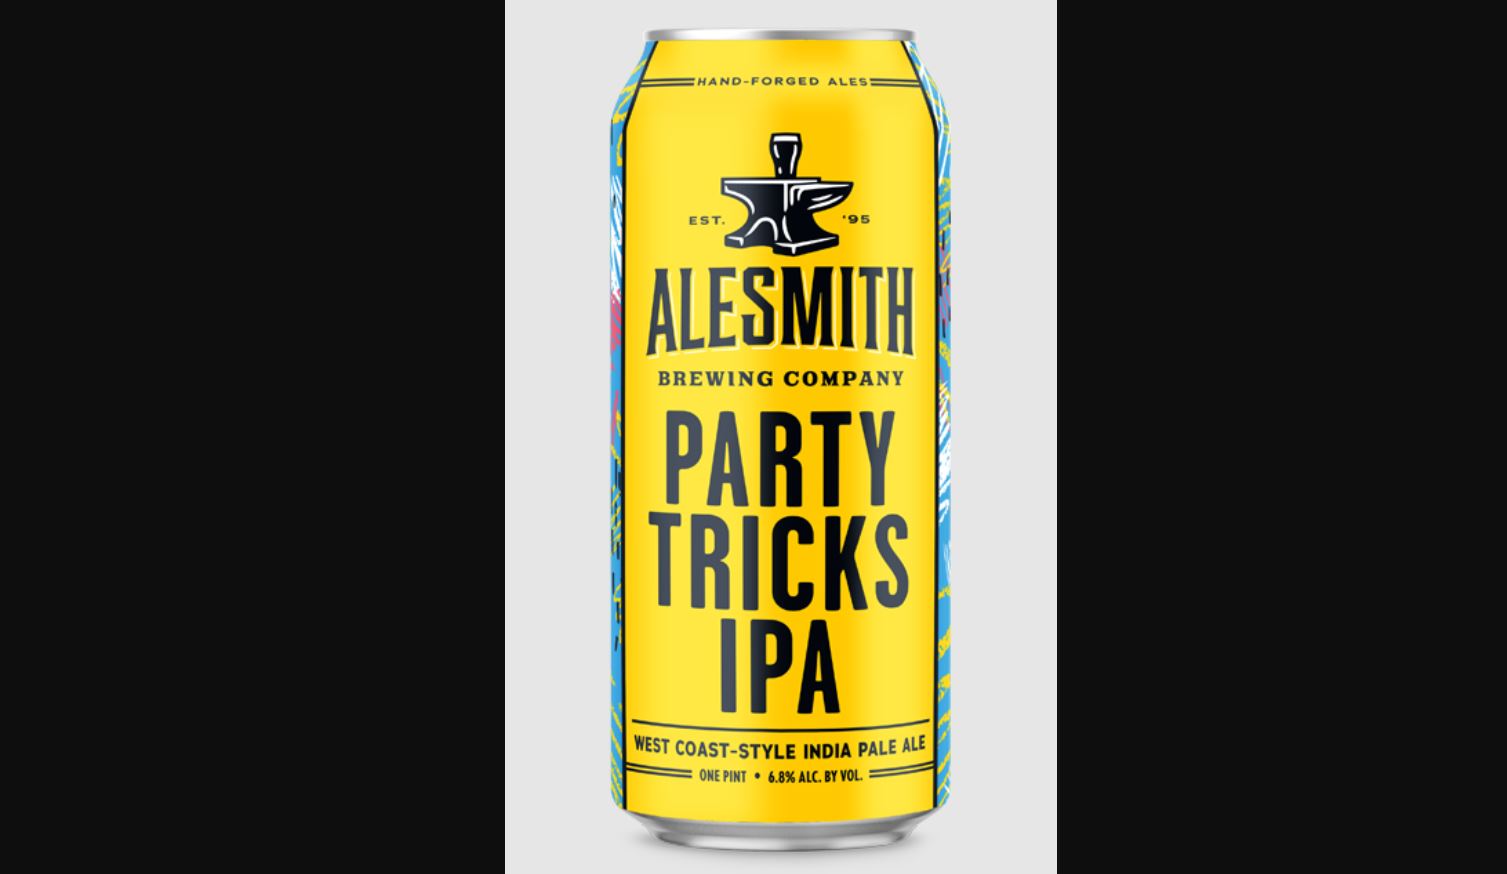 Alesmith Party Tricks